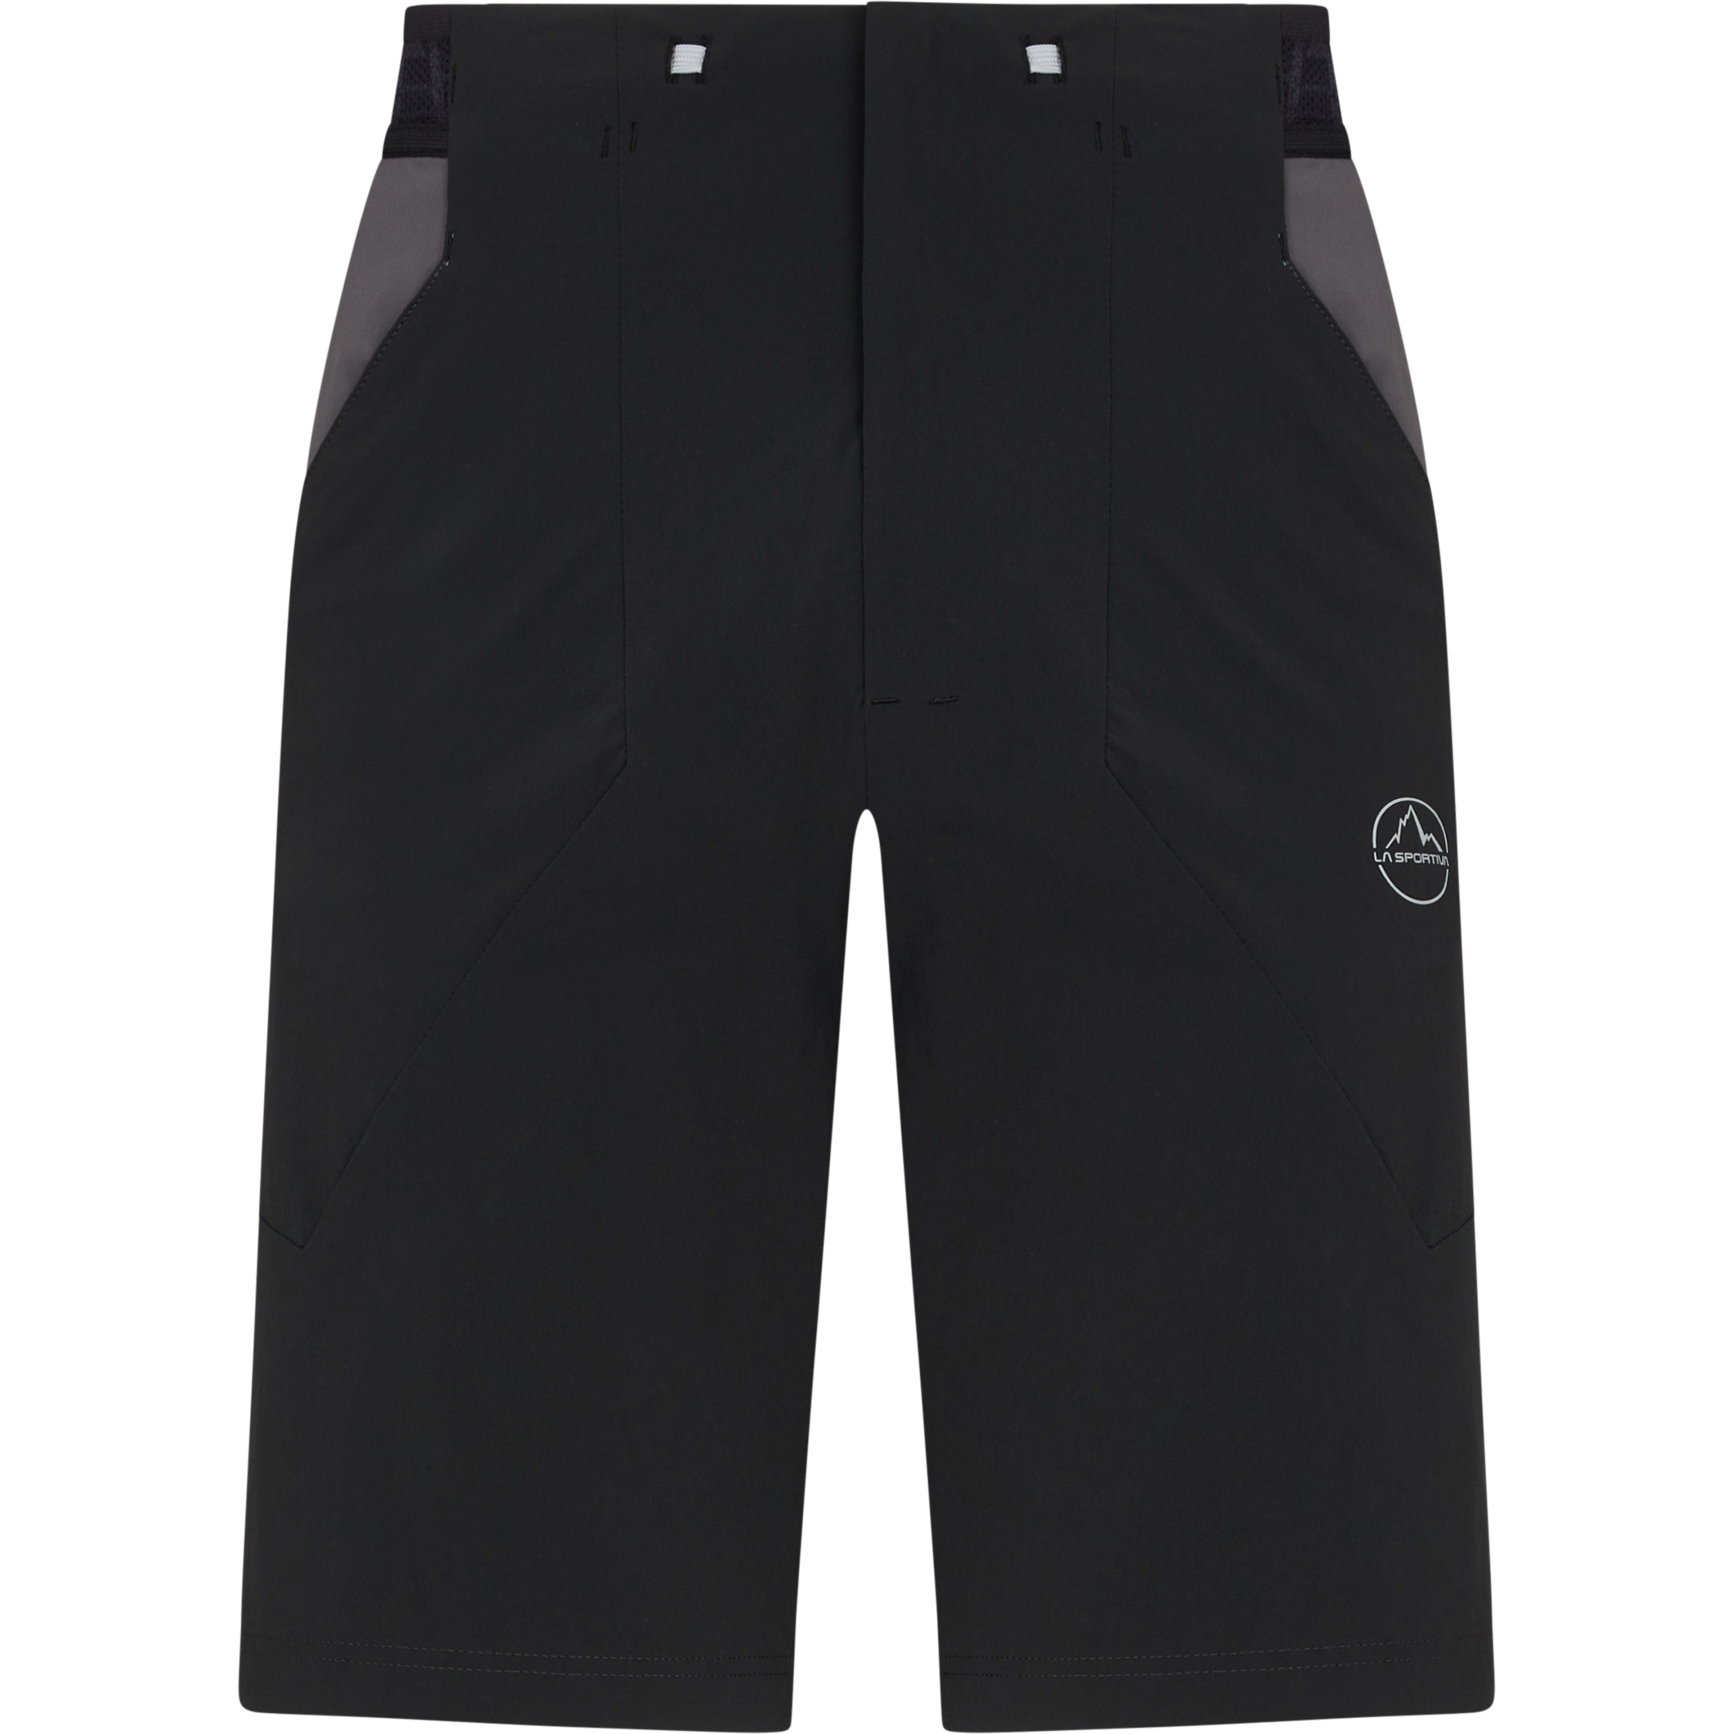 Produktbild von La Sportiva Guard Shorts Herren - Black/Carbon